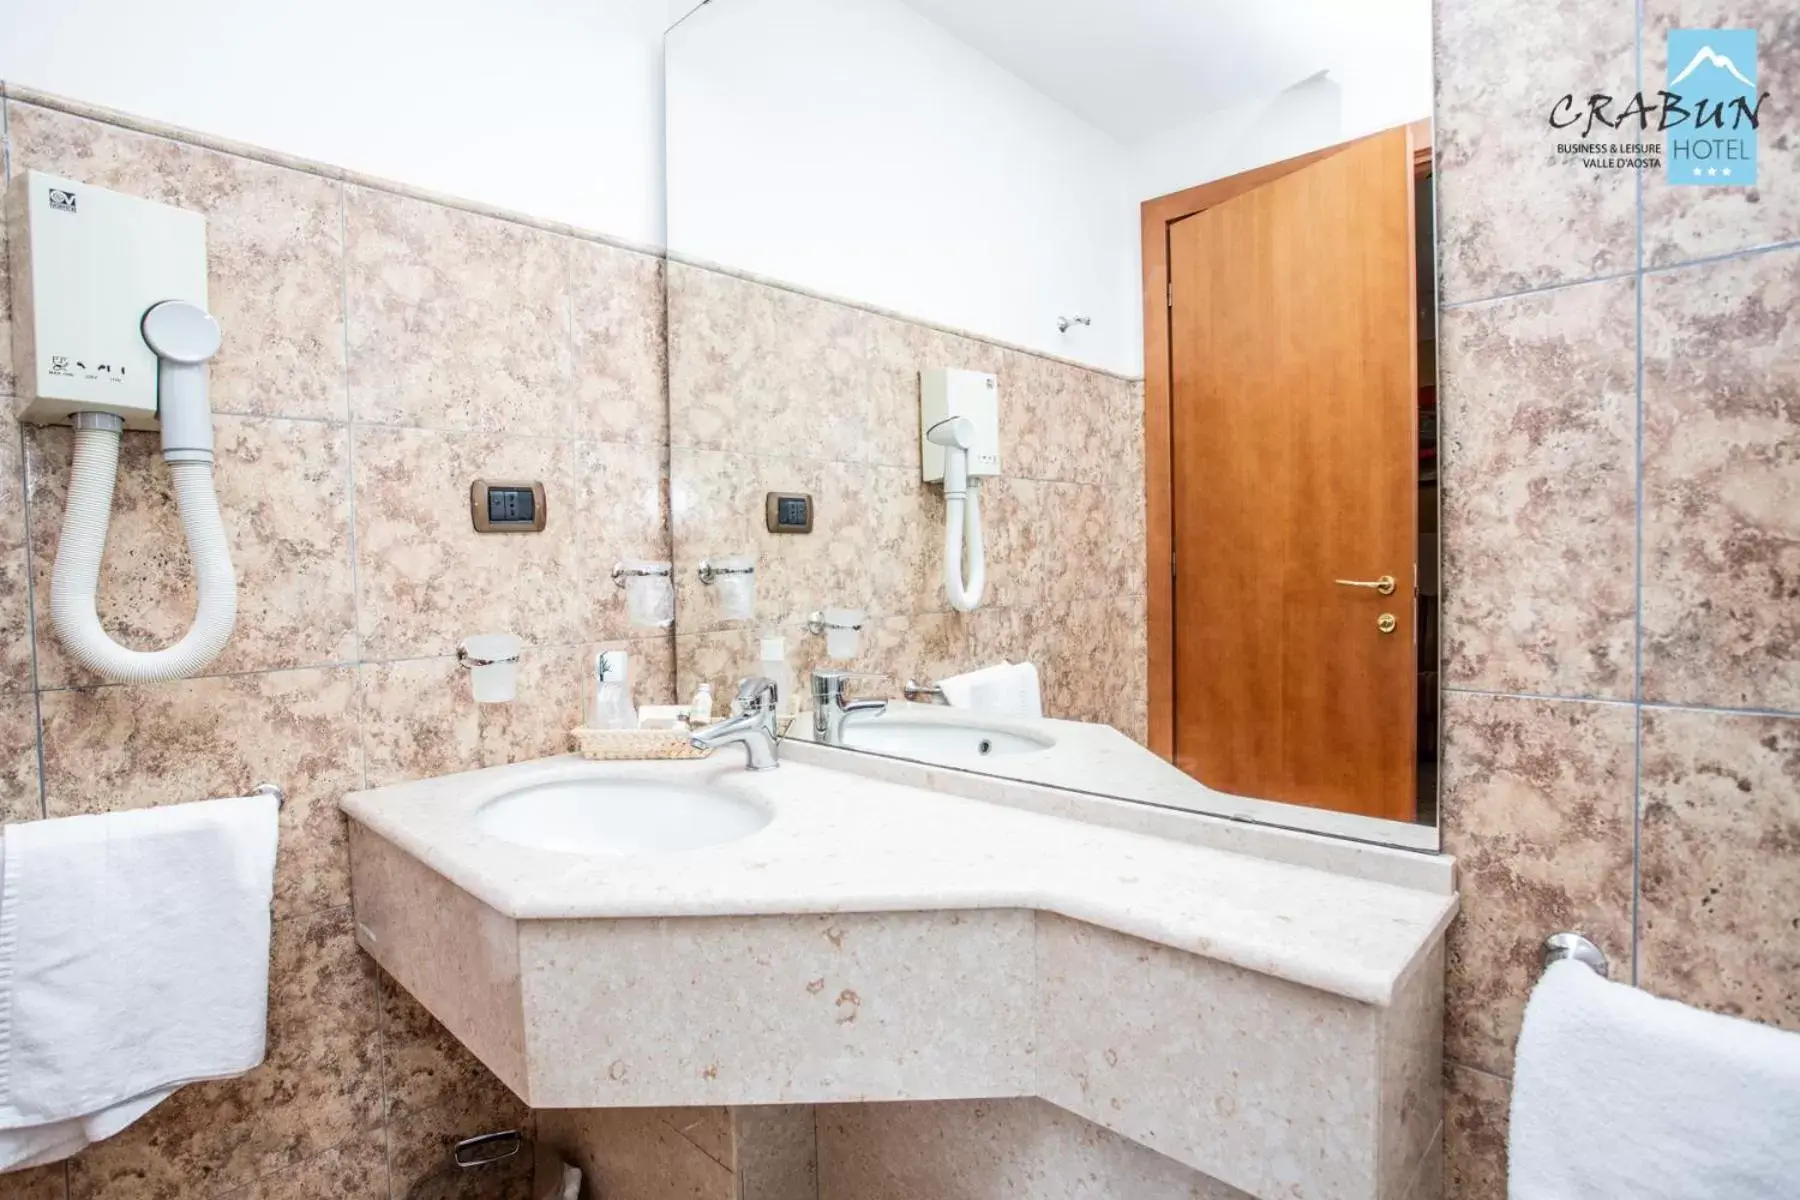 Bathroom in Crabun Hotel